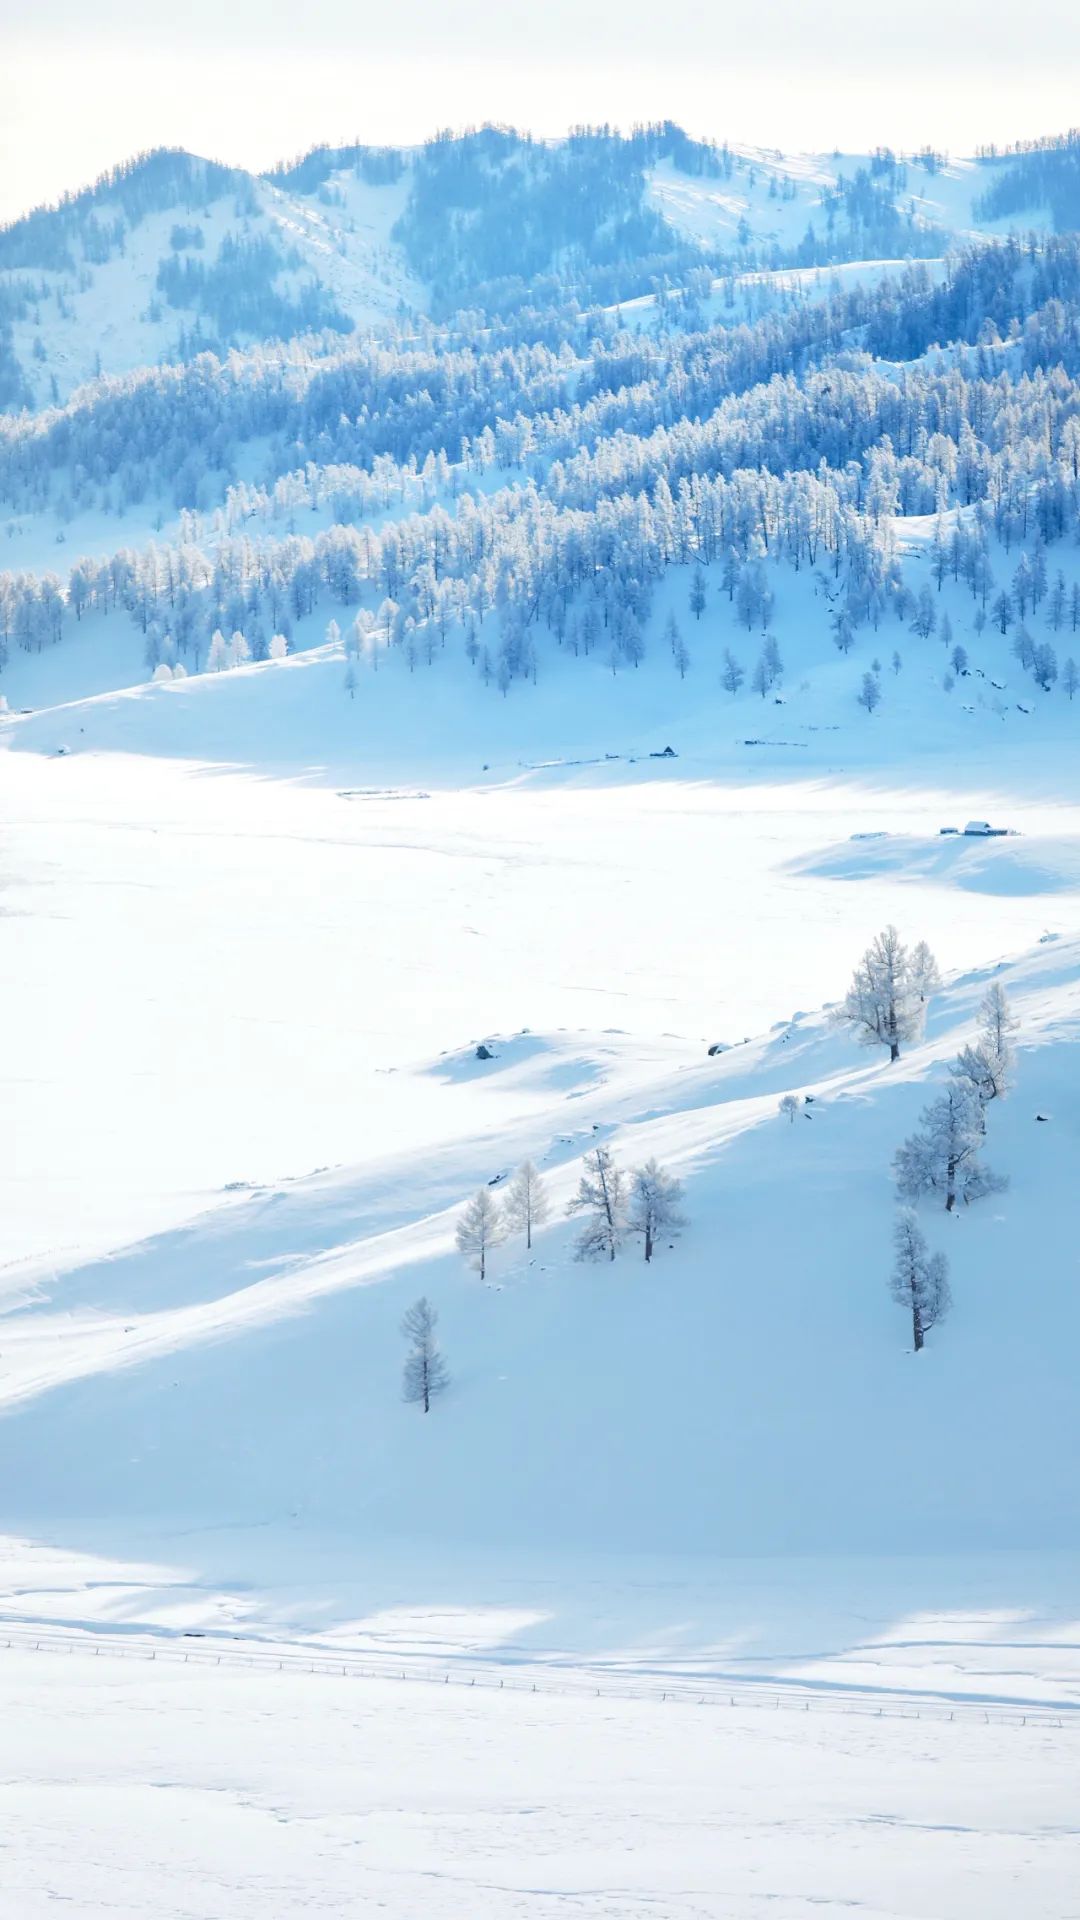 苏州女子多次到达冬季的新疆,这些雪景太美了!张张都是高清屏保